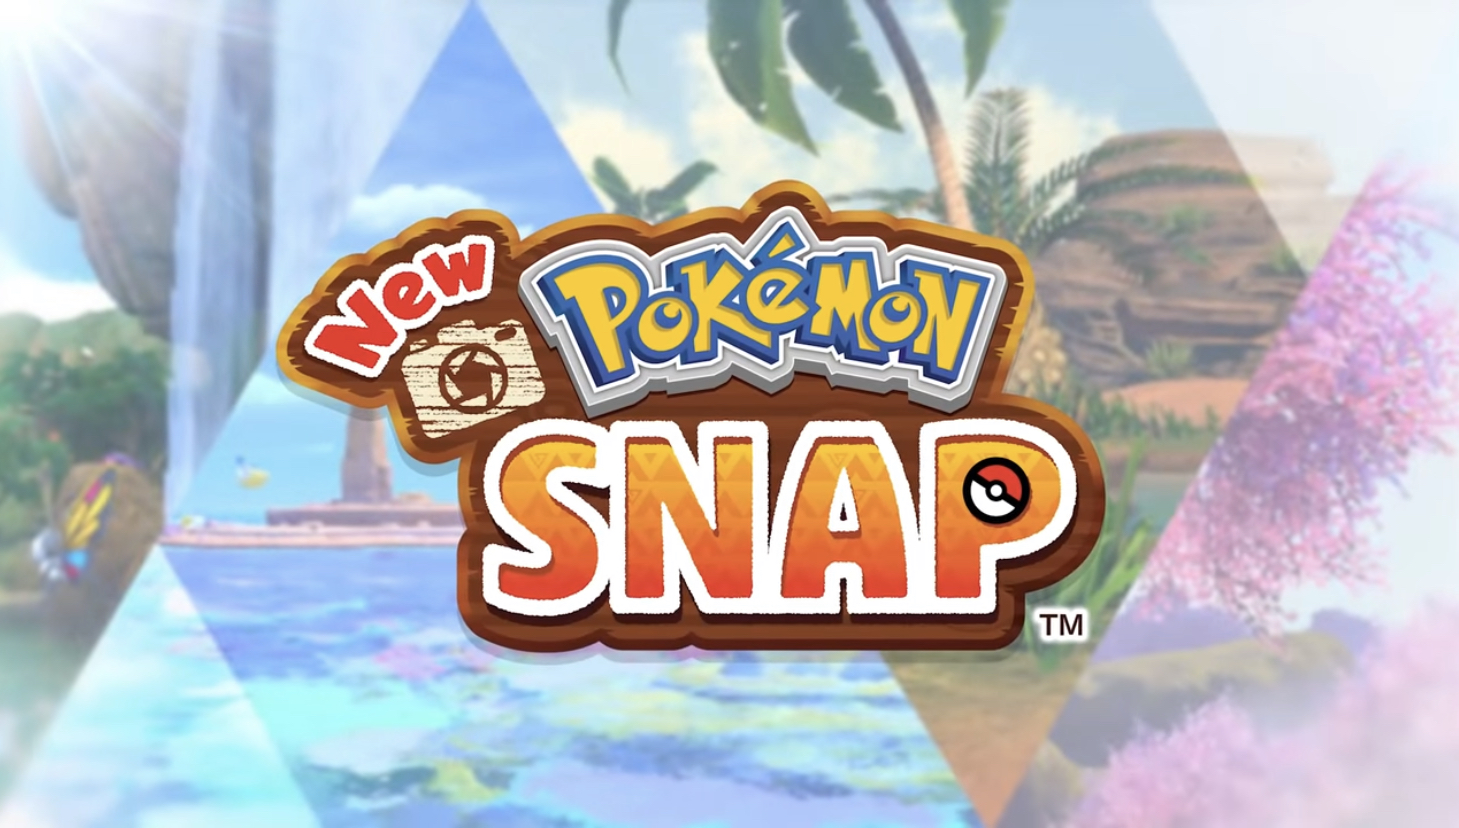 New Pokémon Snap Releasing On April 30